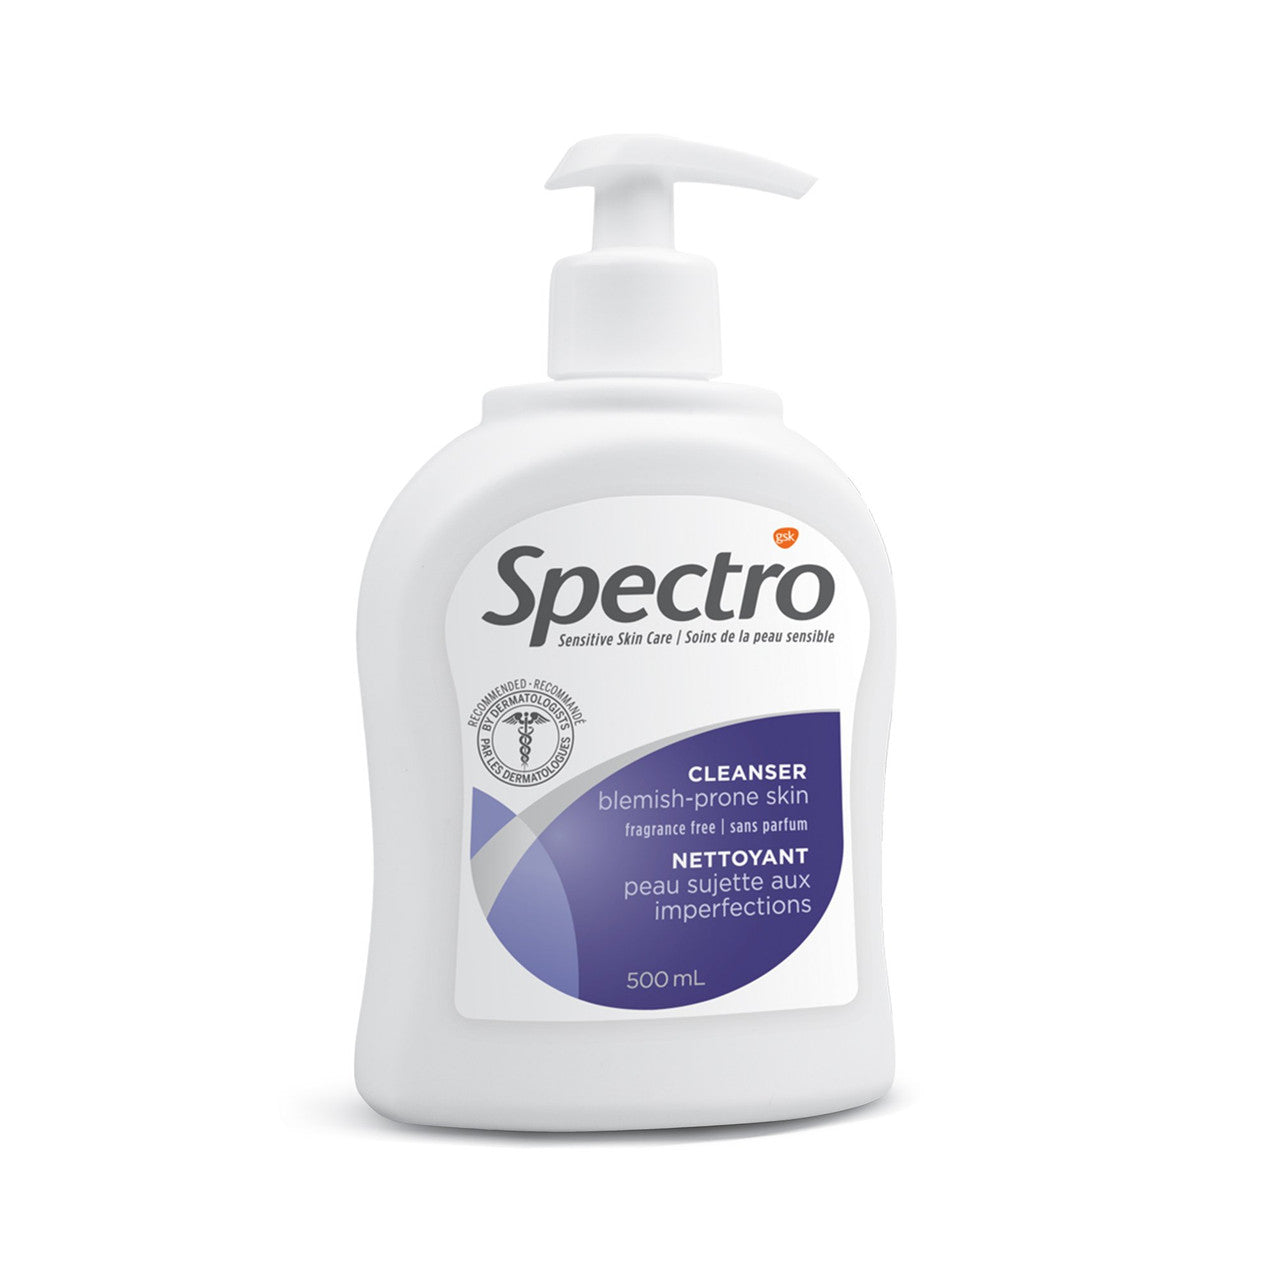 Spectro Jel Cleanser 500ml (17 Fl.oz.) (For Blemish Prone Skin (Fragrance Free)